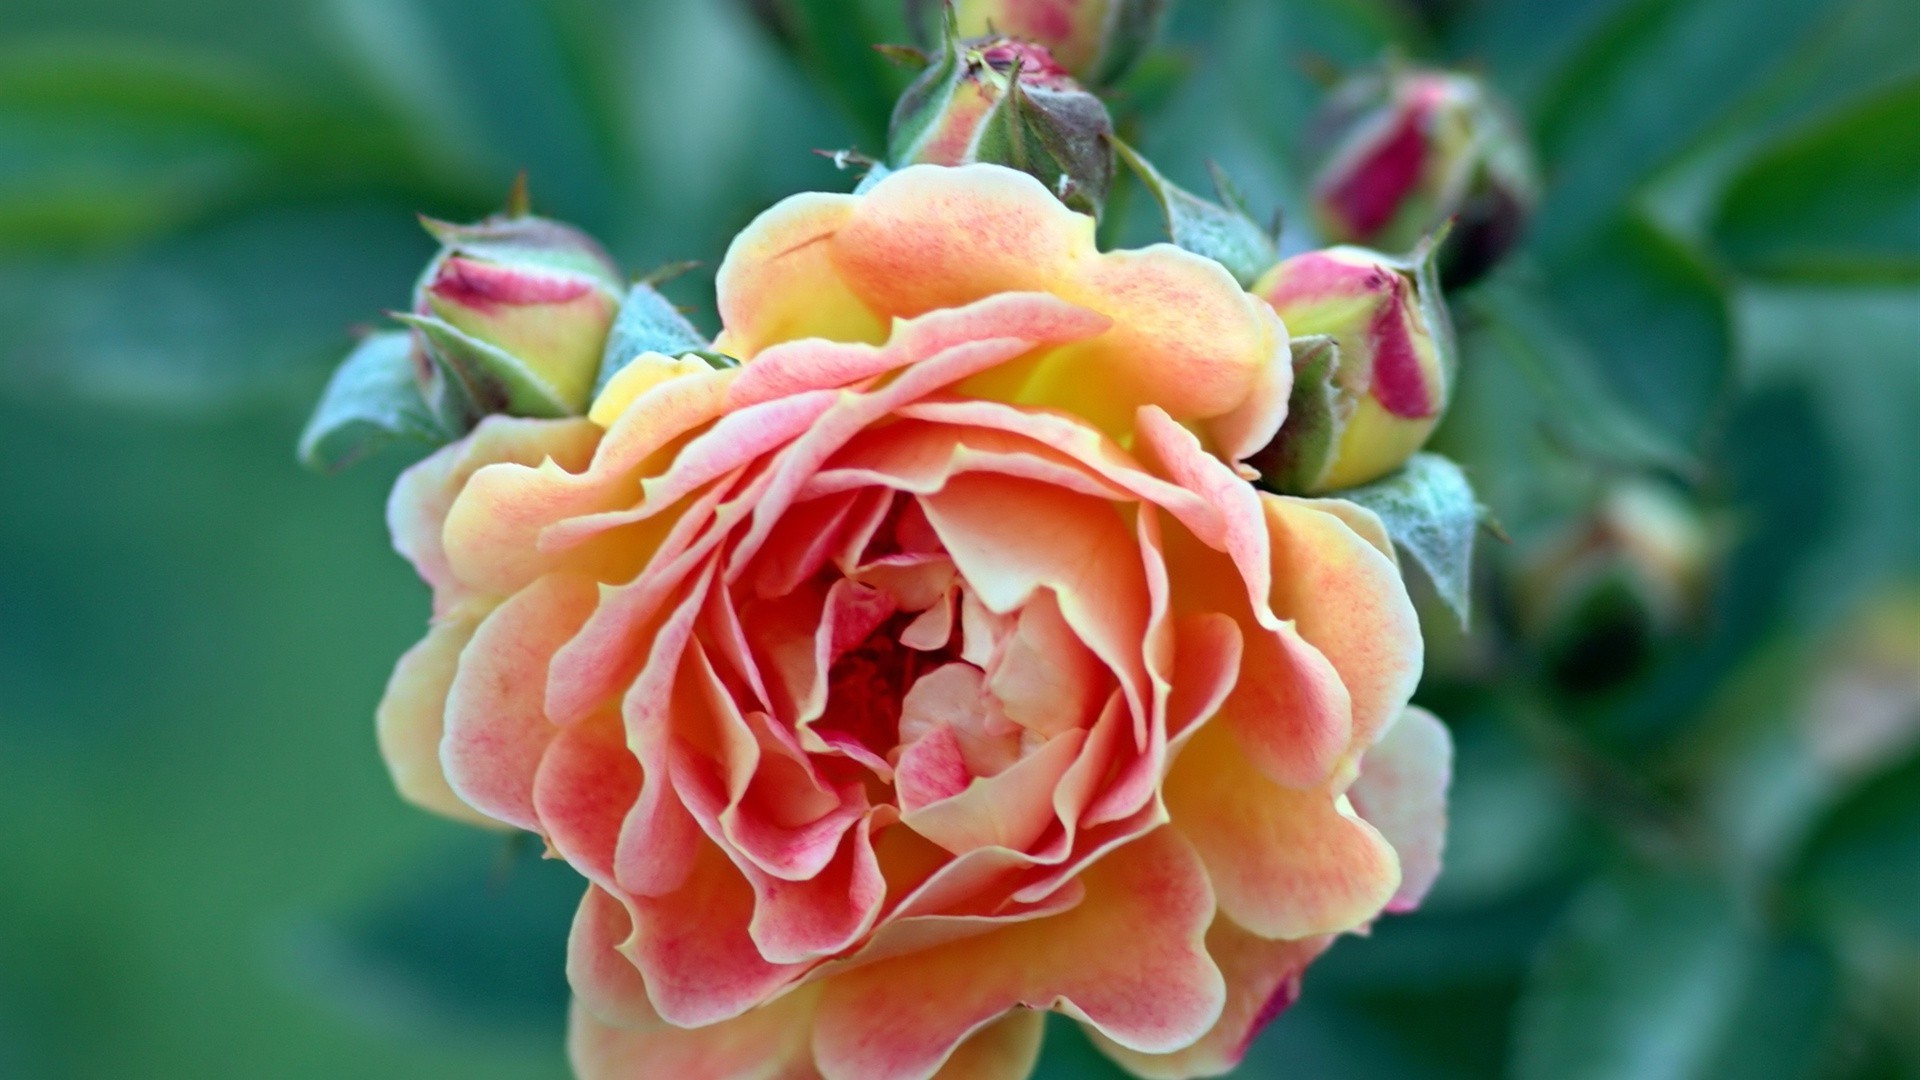 цветы роза цветок природа лист флора сад цветочные лепесток блюминг лето романтика любовь на открытом воздухе крупным планом романтический цвет яркий